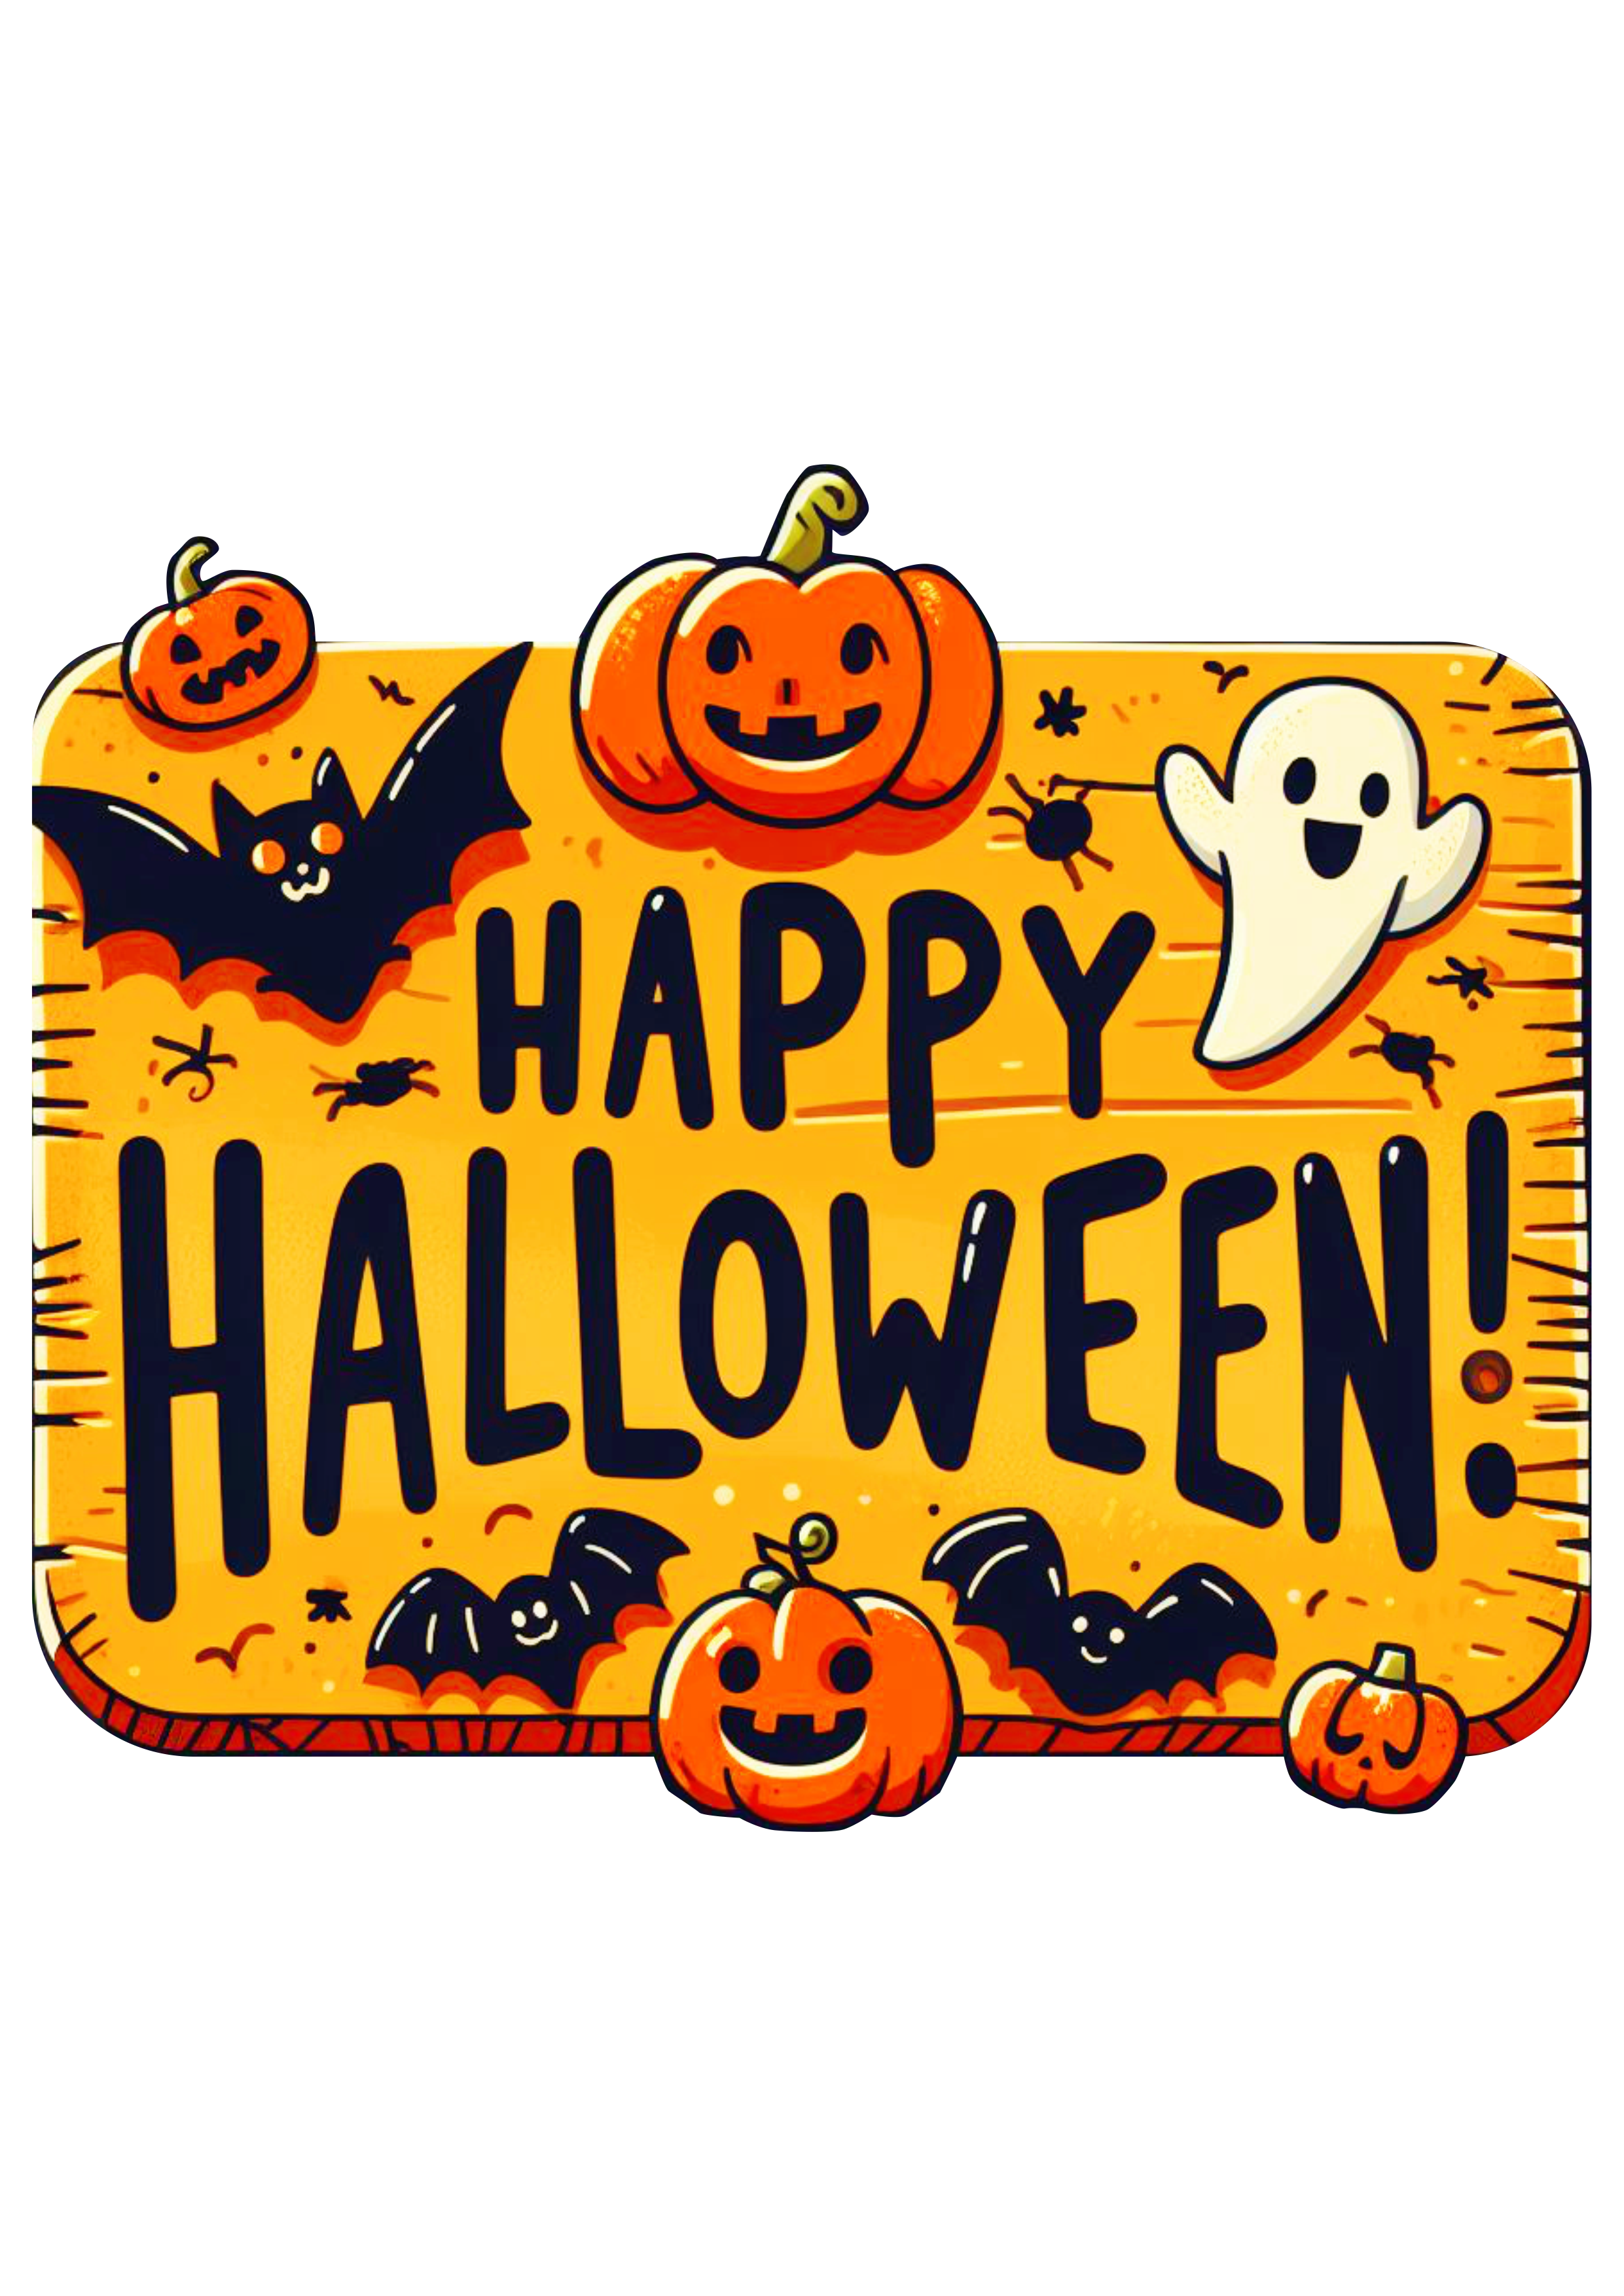 Happy Halloween placa decorativa gostosuras ou travessuras desenho simples morcego abóbora fantasma aranha png